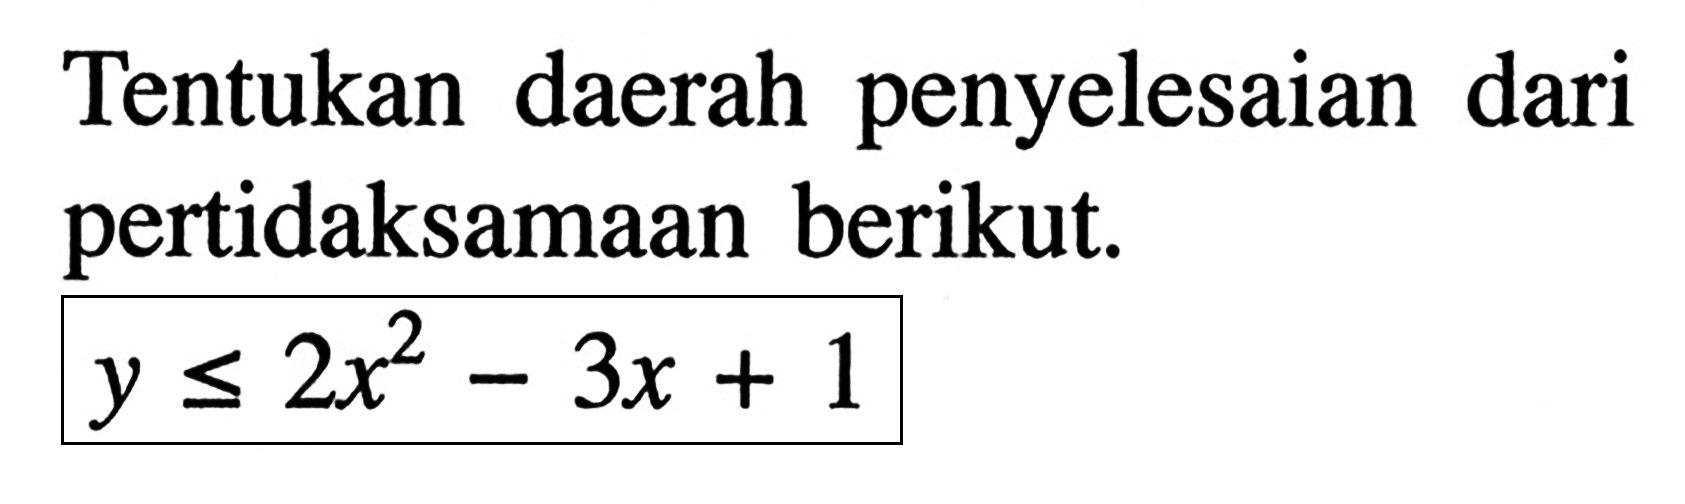 Tentukan daerah penyelesaian dari pertidaksamaan berikut y <= 2x^2-3x+1